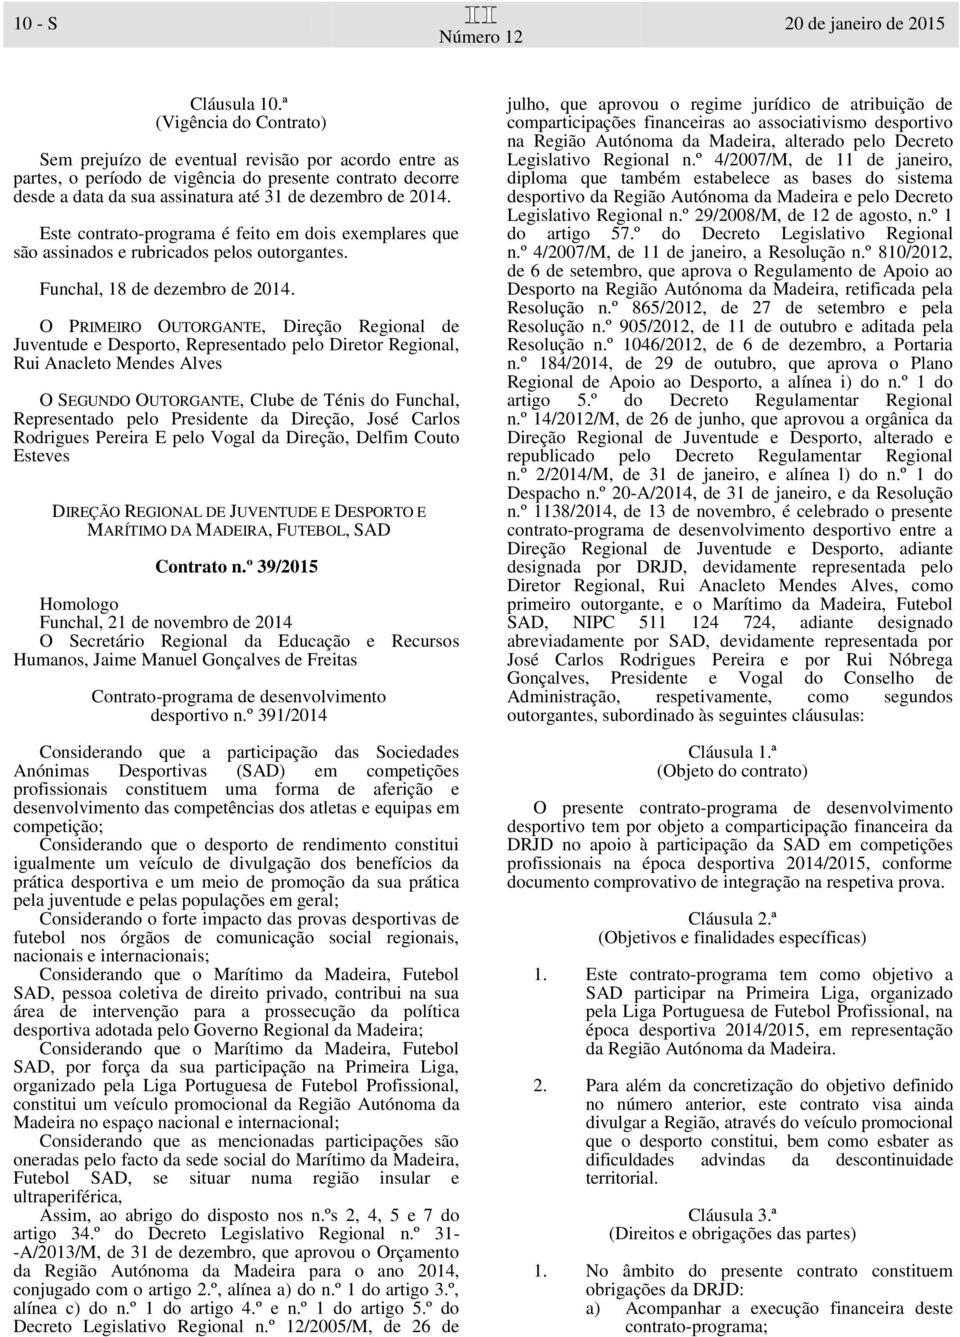 Este contrato-programa é feito em dois exemplares que são assinados e rubricados pelos outorgantes. Funchal, 18 de dezembro de 2014.